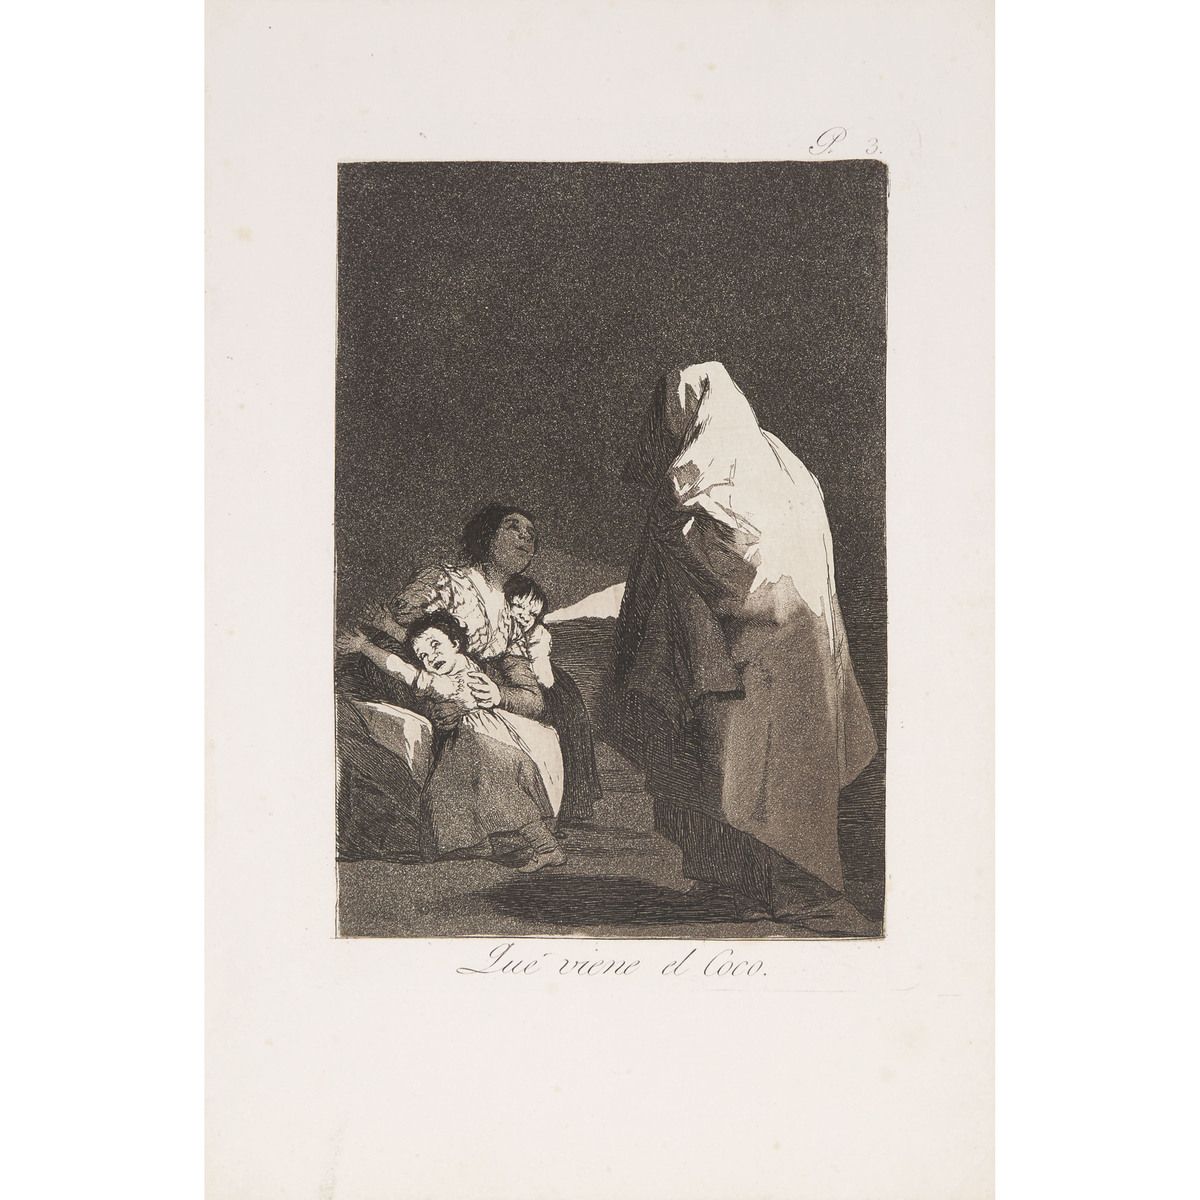 Francisco José de Goya y Lucientes (1746-1828), LOS CAPRICHOS, CA. 1855-1878 [D. 40-111; H. 38-109], - Image 3 of 55